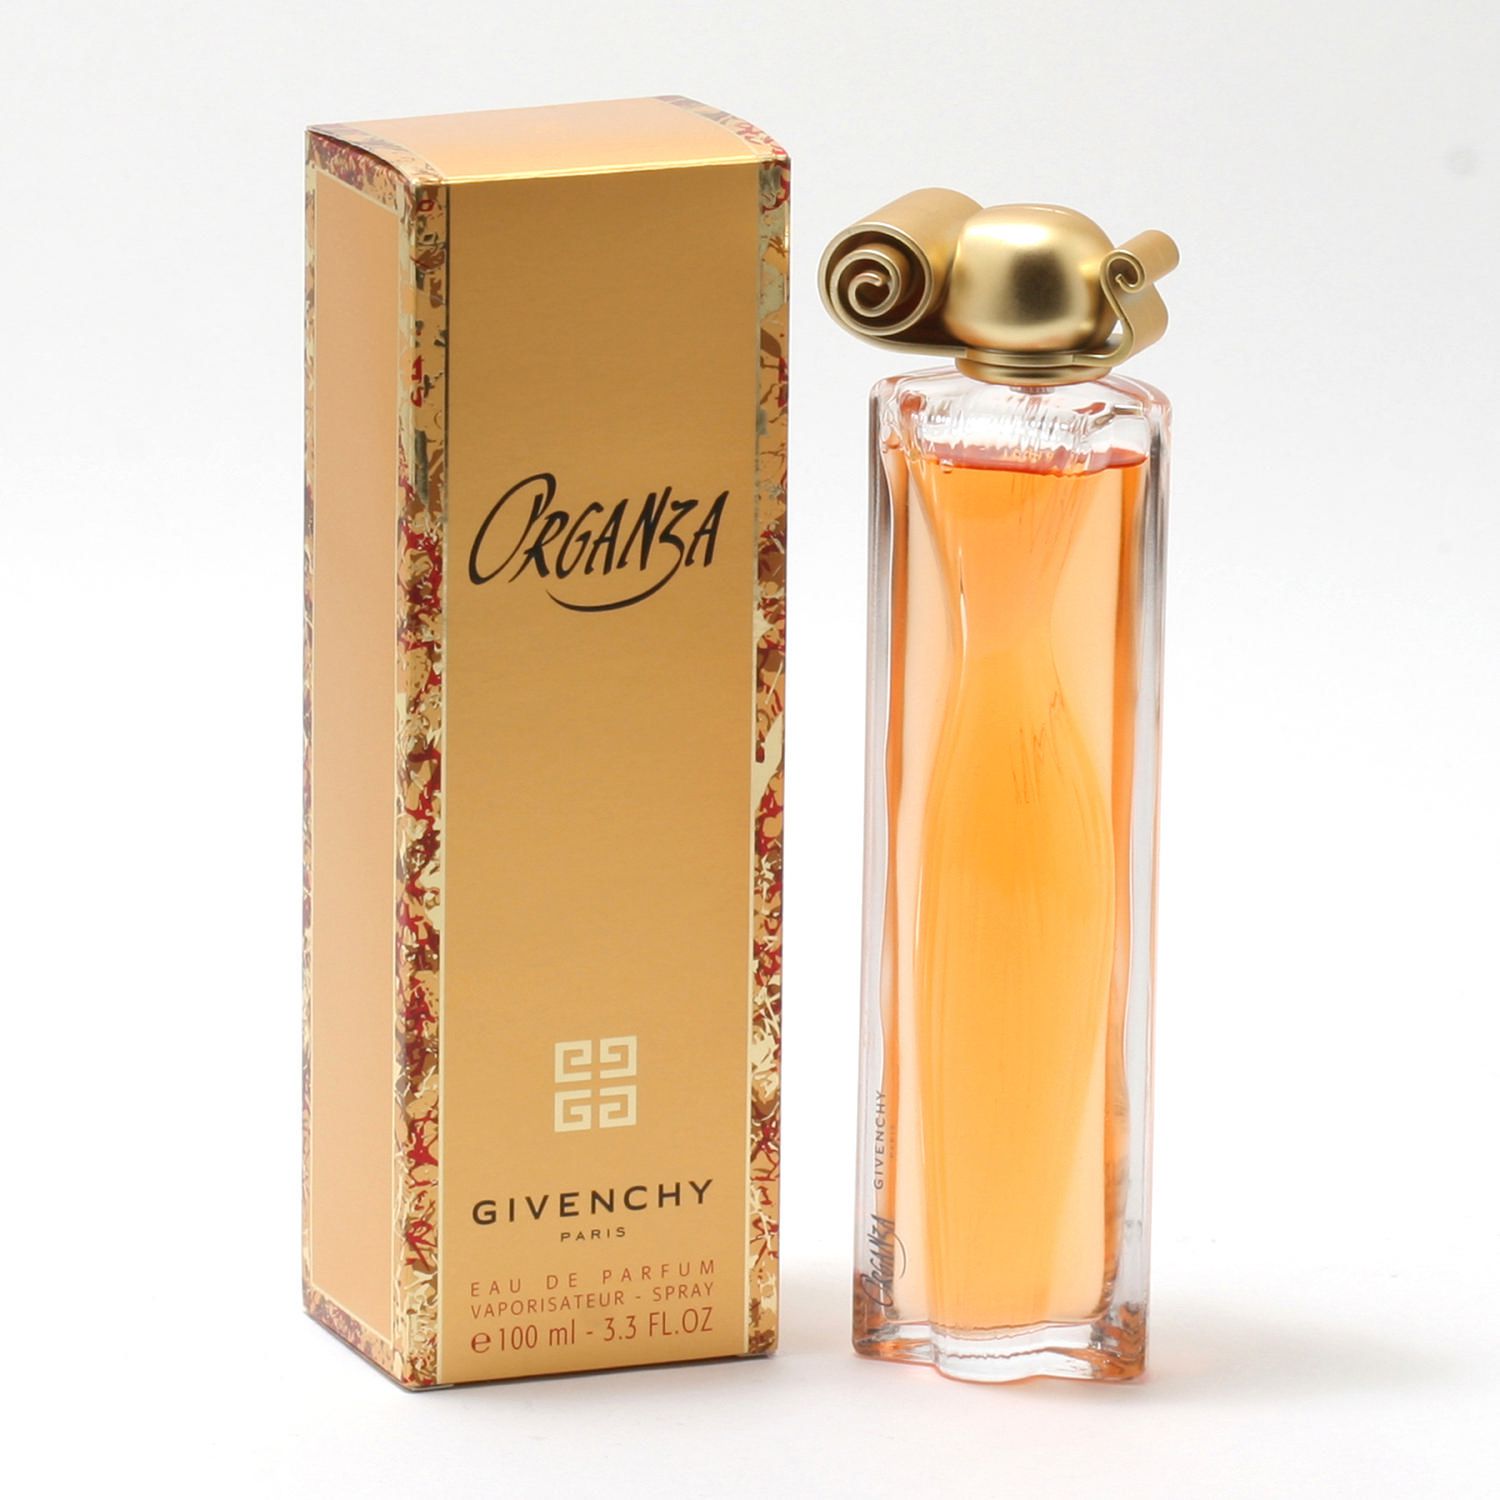 Organza Perfume 100ml - Thế giới nước hoa cao cấp dành riêng cho bạn